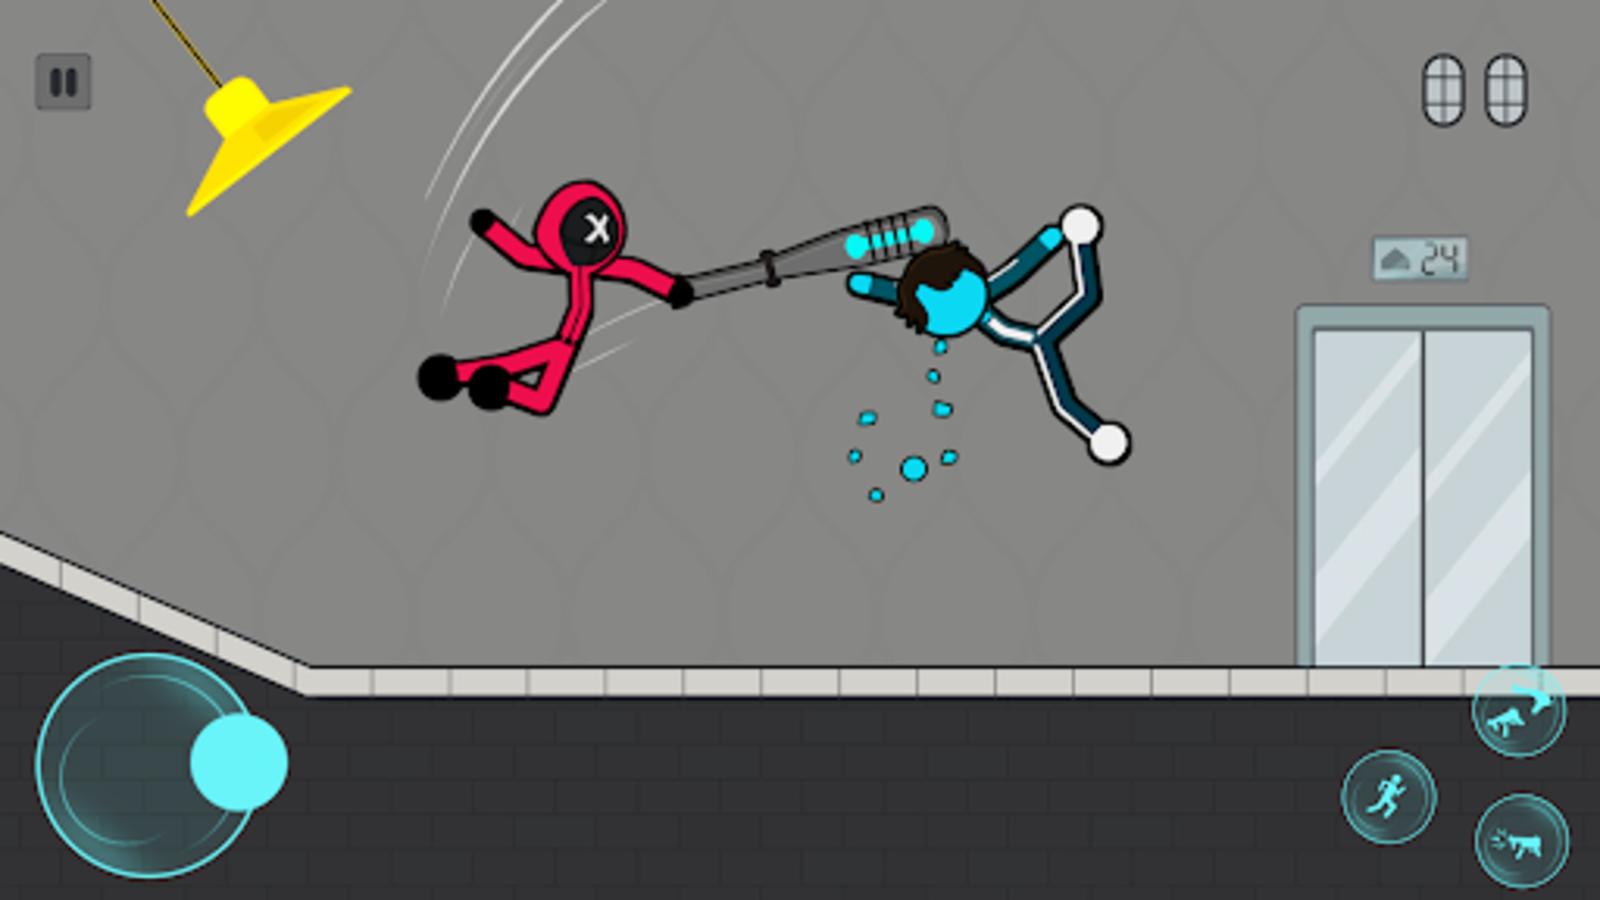 Stickman Fight - jogos para 2 APK (Download Grátis) - Android Jogo